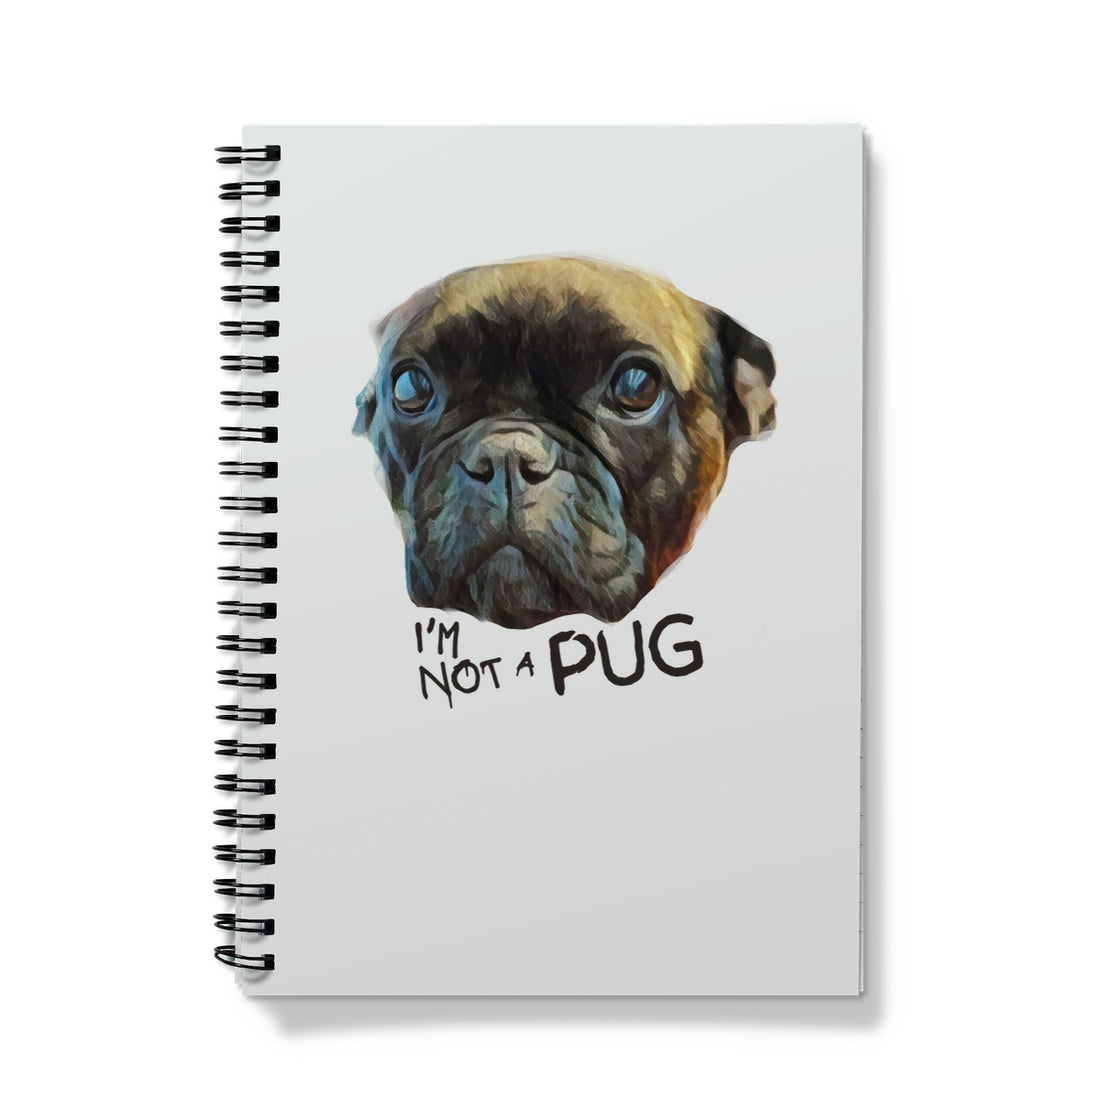 I'm not a PUG Notebook